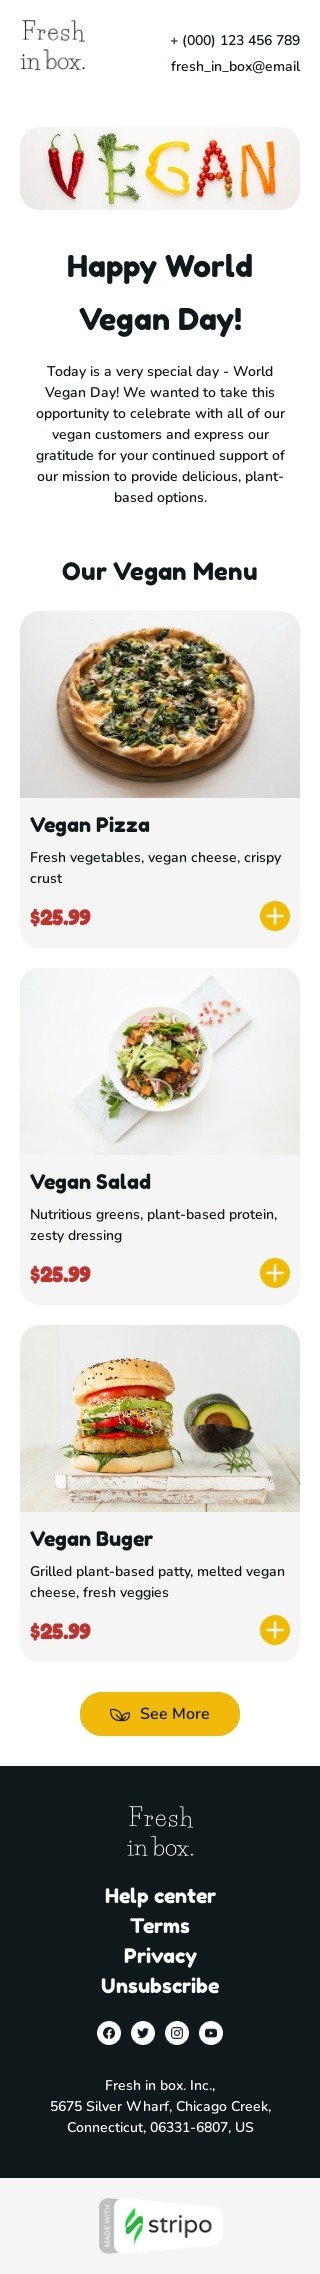 Plantilla de correo electrónico «Nuestro menú vegano» de Día mundial del vegano para la industria de gastronomía Vista de móvil